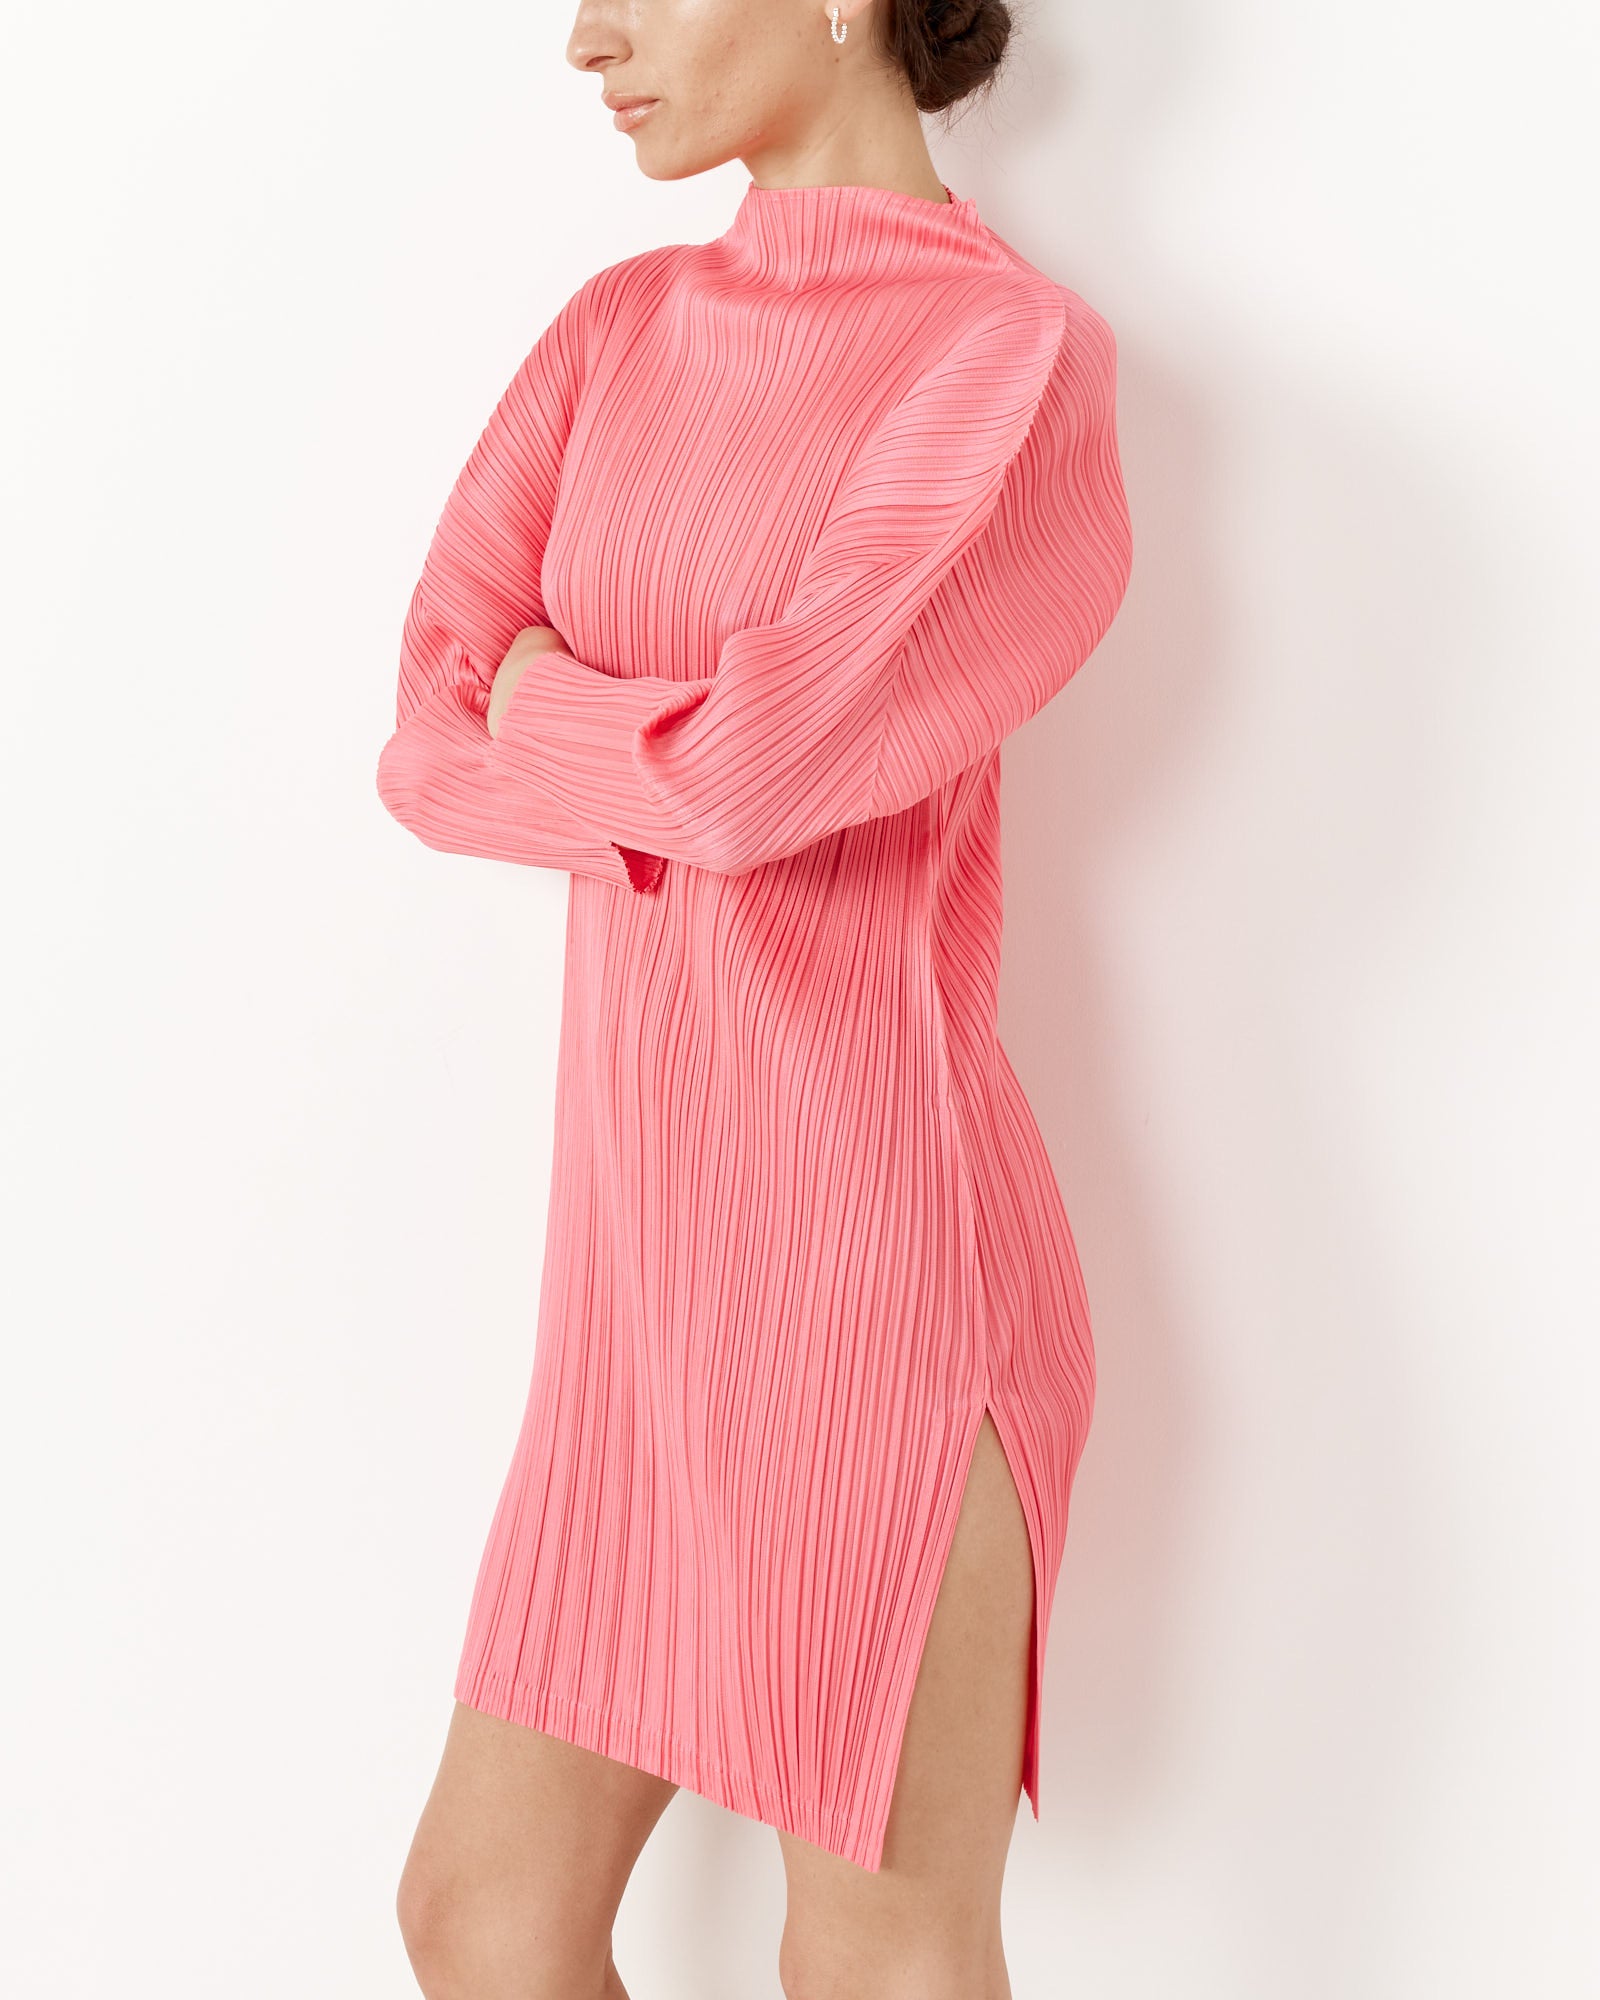 MC Feb Dress in Bright Pink